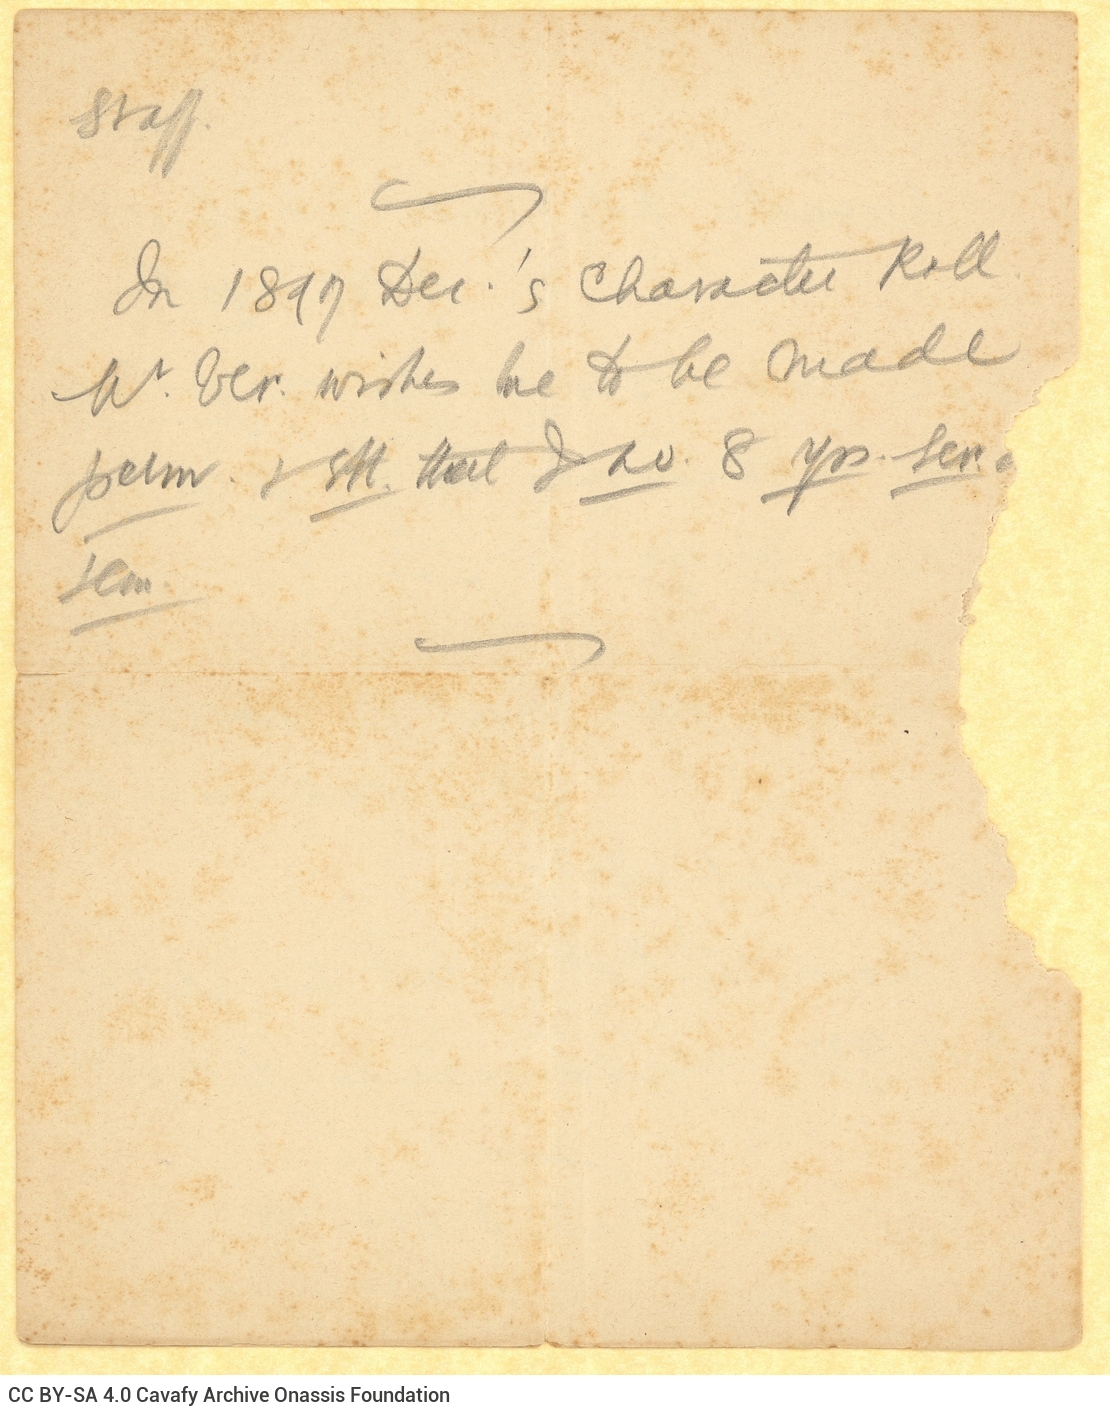 Χειρόγραφες σημειώσεις του Καβάφη στις δύο πρώτες σελίδες τετρασέ